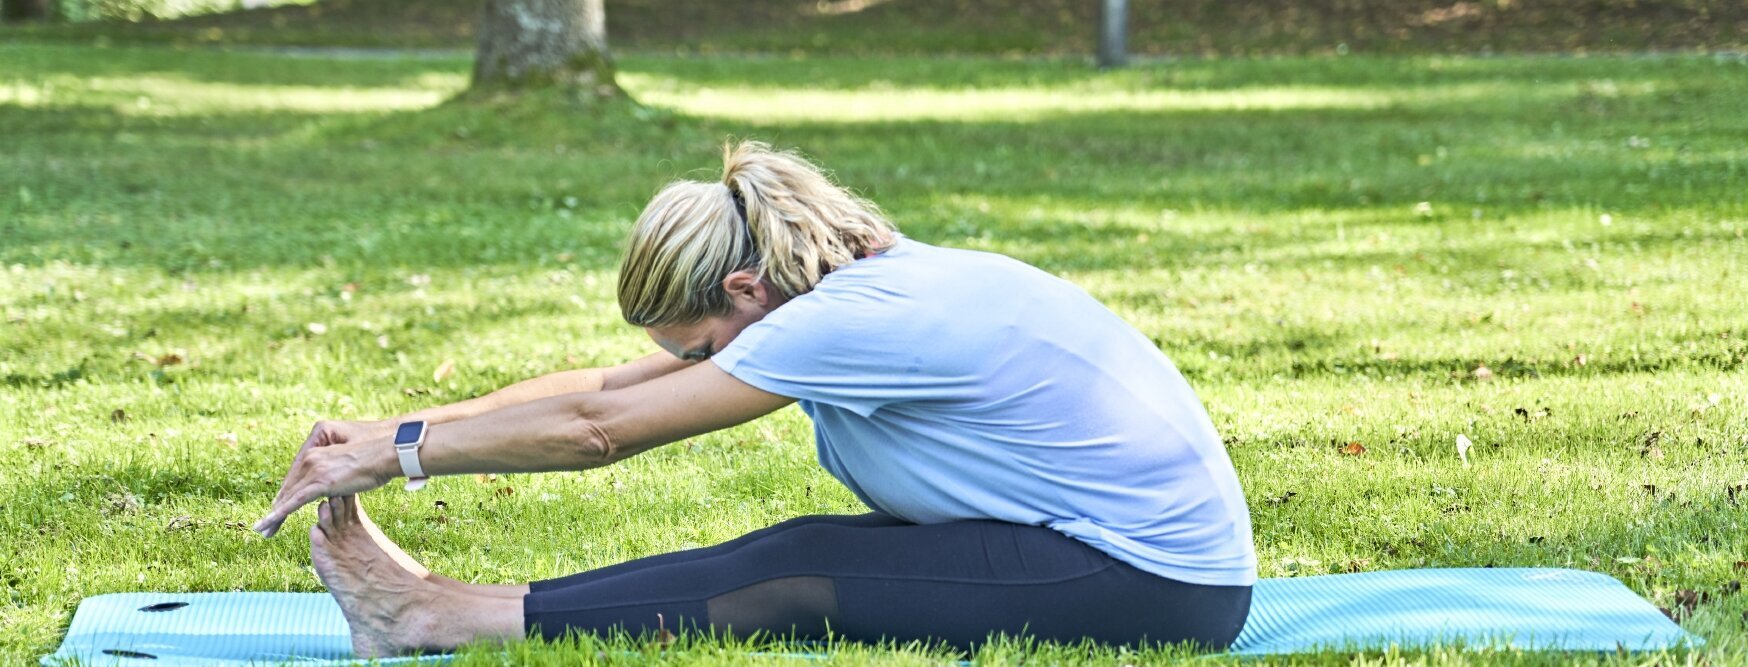 Ich sehe eine Frau mit schwarzer Sporthose und hellblauem T-shirt, die sich auf einer türkisen Yoga-Matte dehnt. 